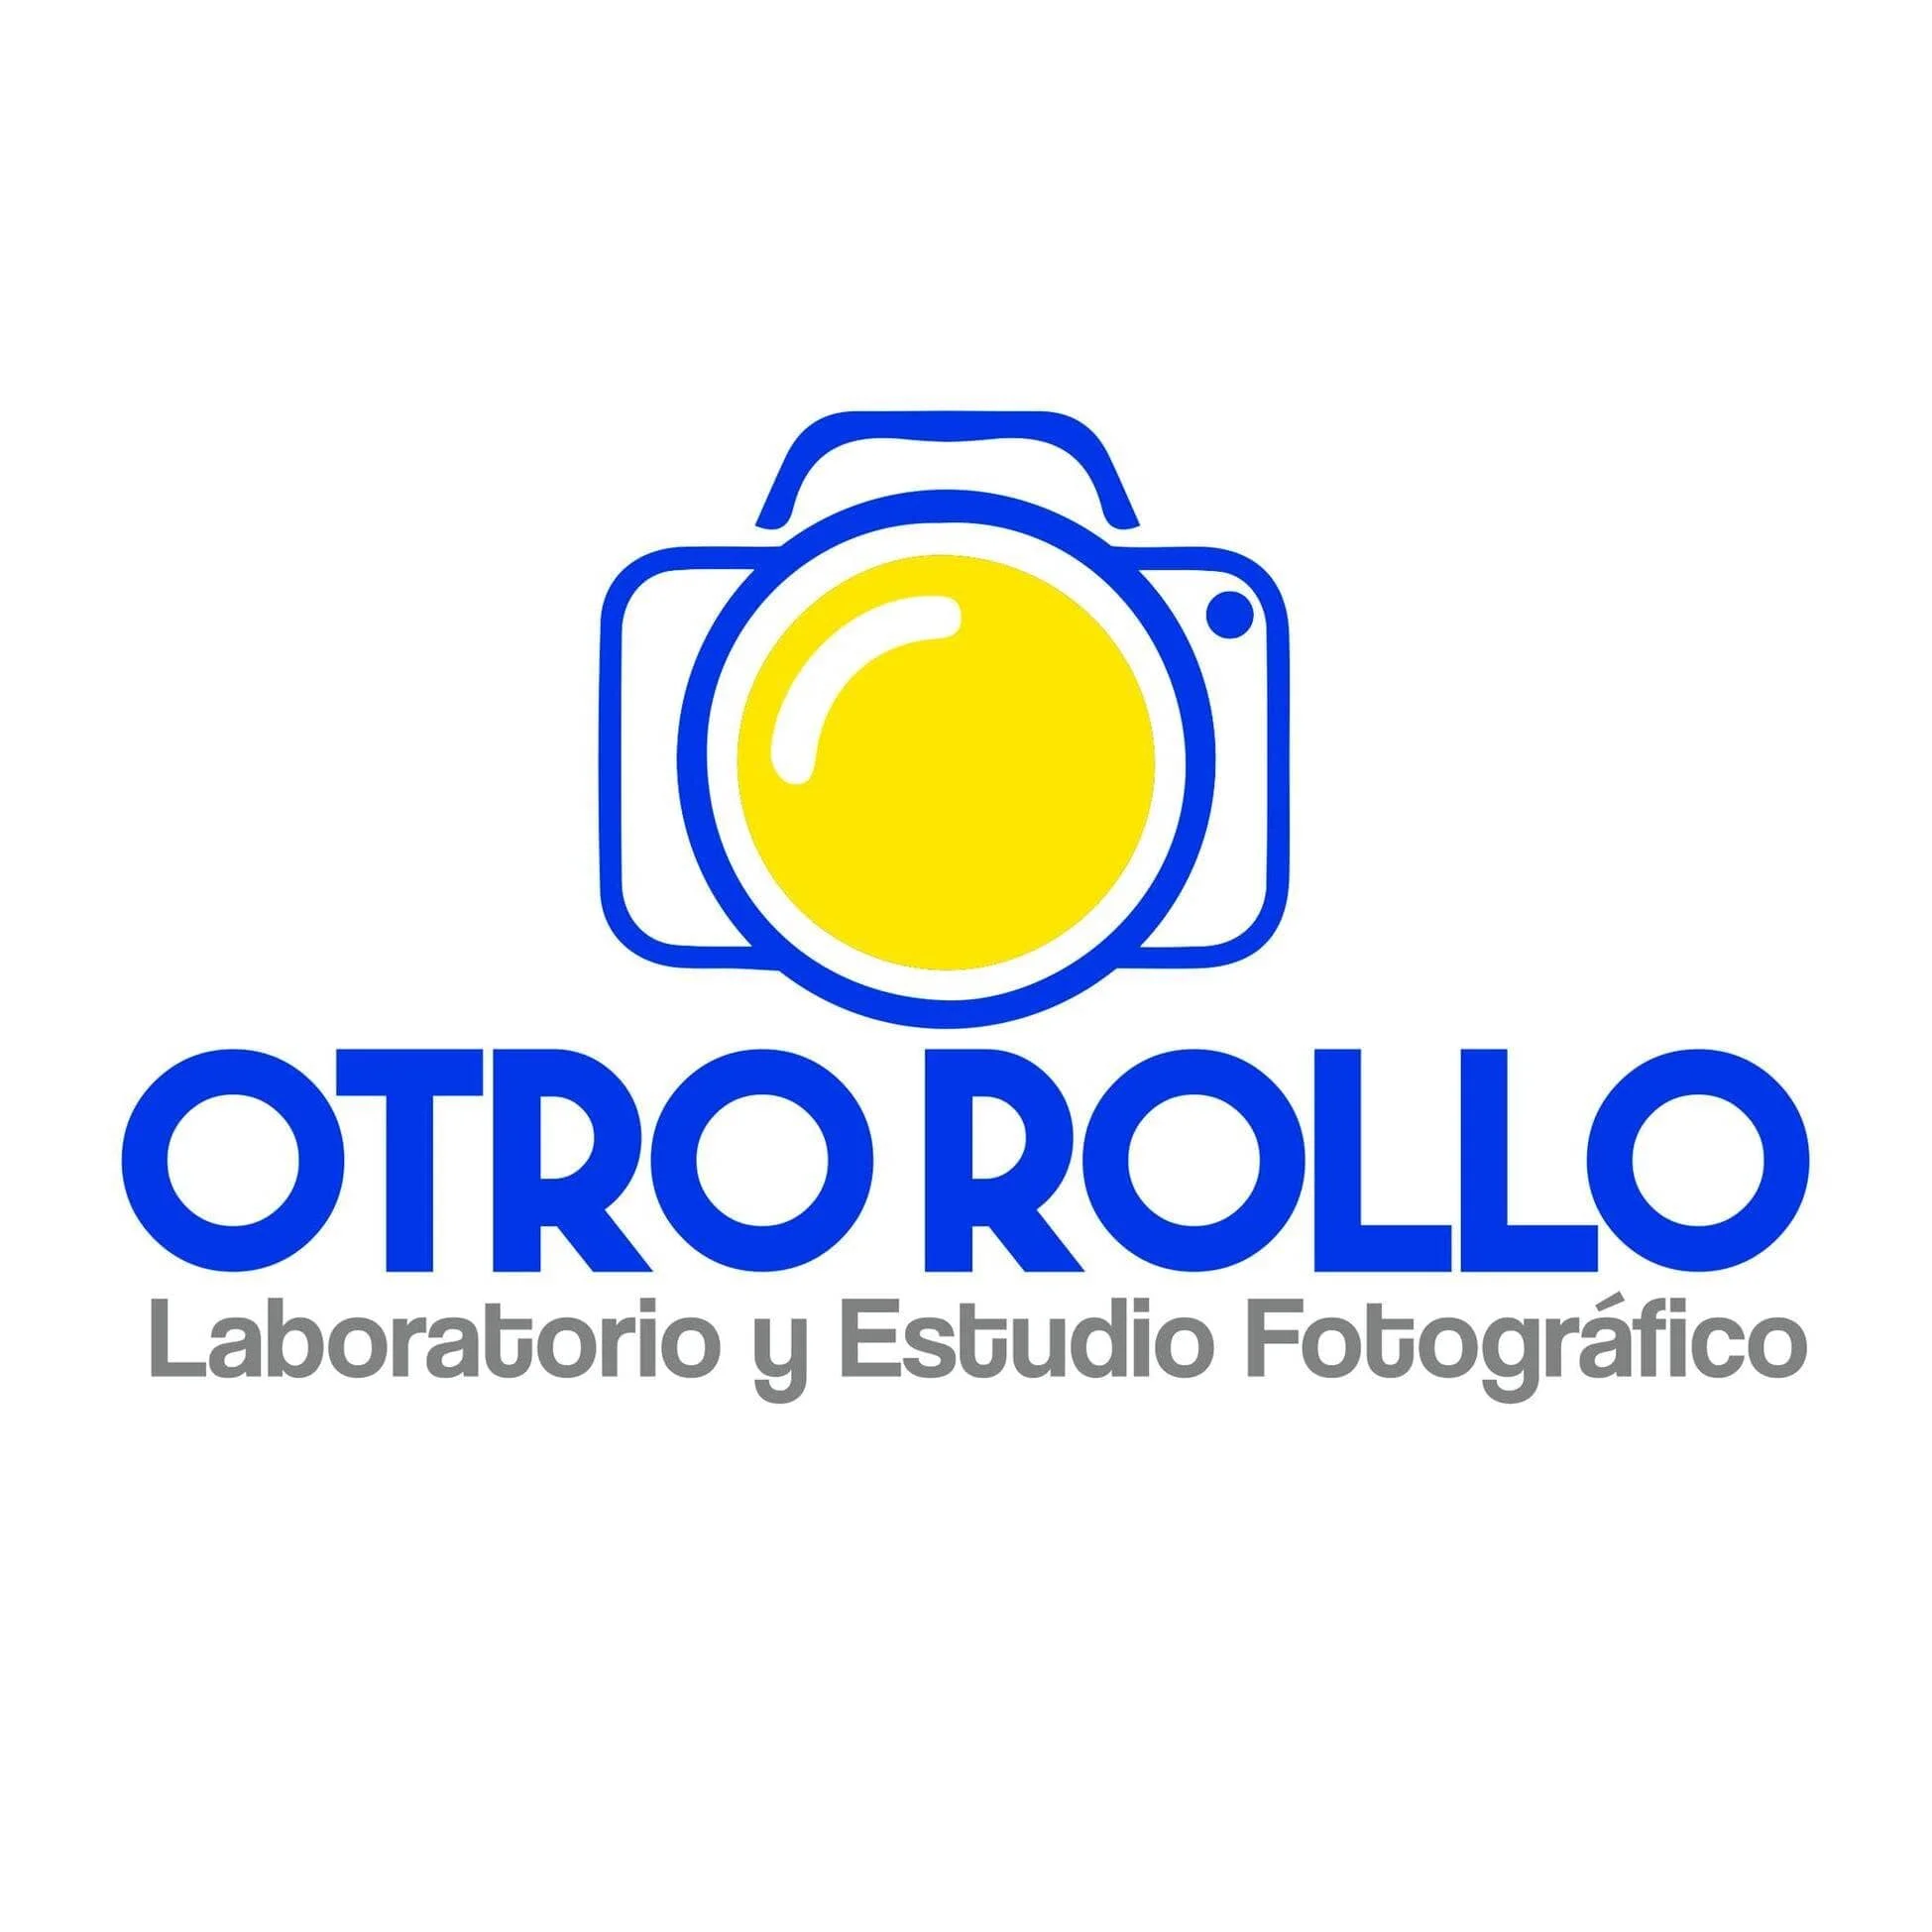 OTRO ROLLO - Laboratorio y Estudio Fotográfico-10574